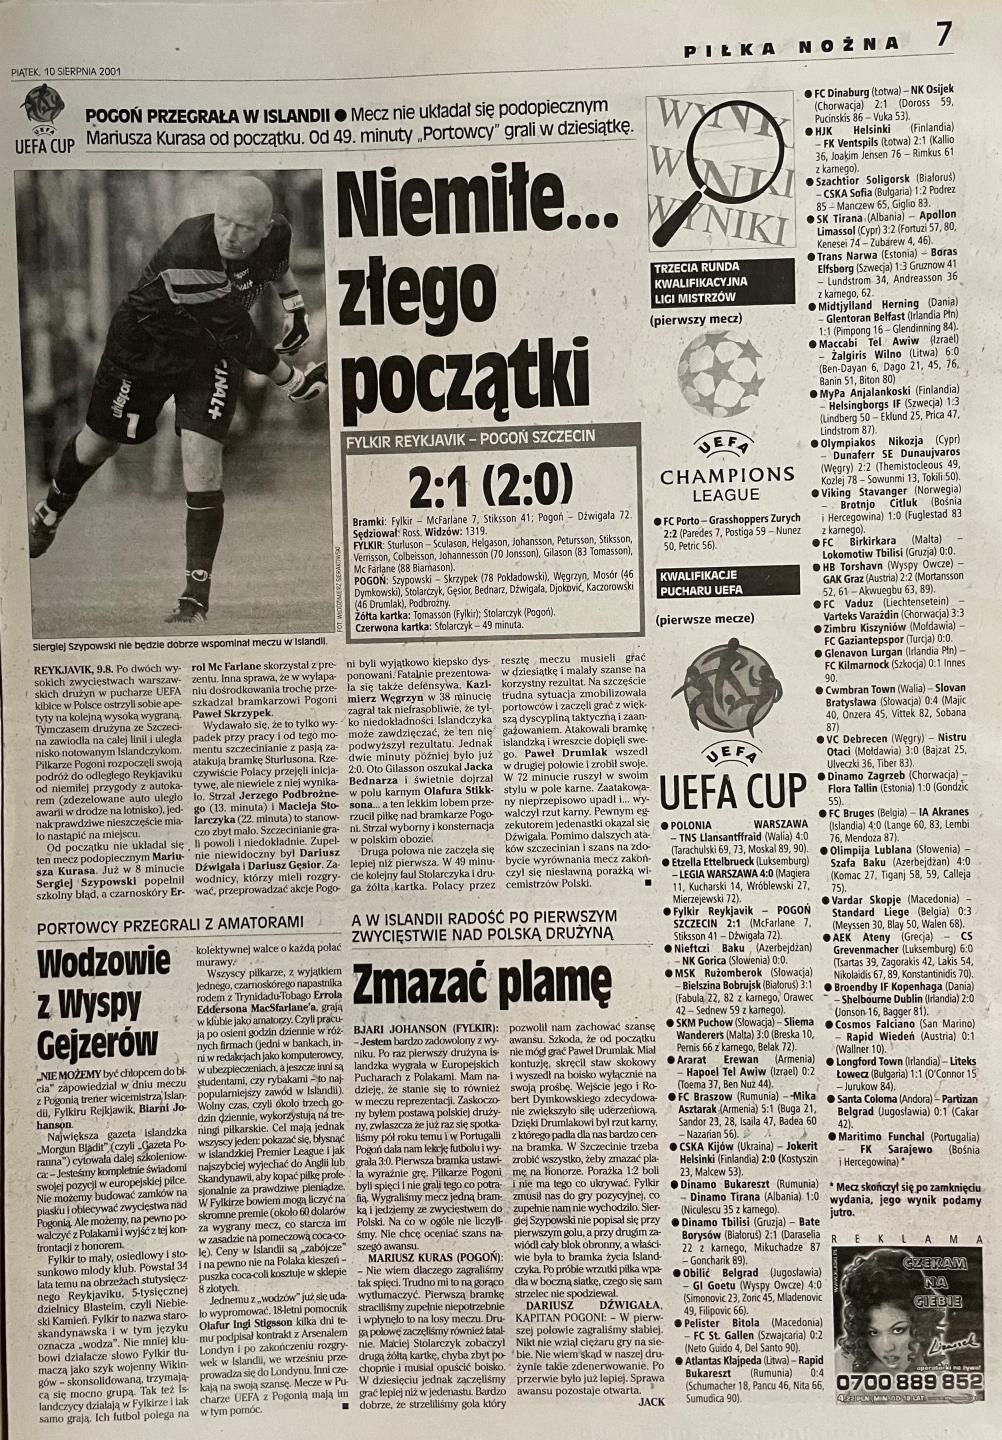 Przegląd Sportowy po meczu Fylkir Reykjavík - Pogoń Szczecin (9.08.2001)